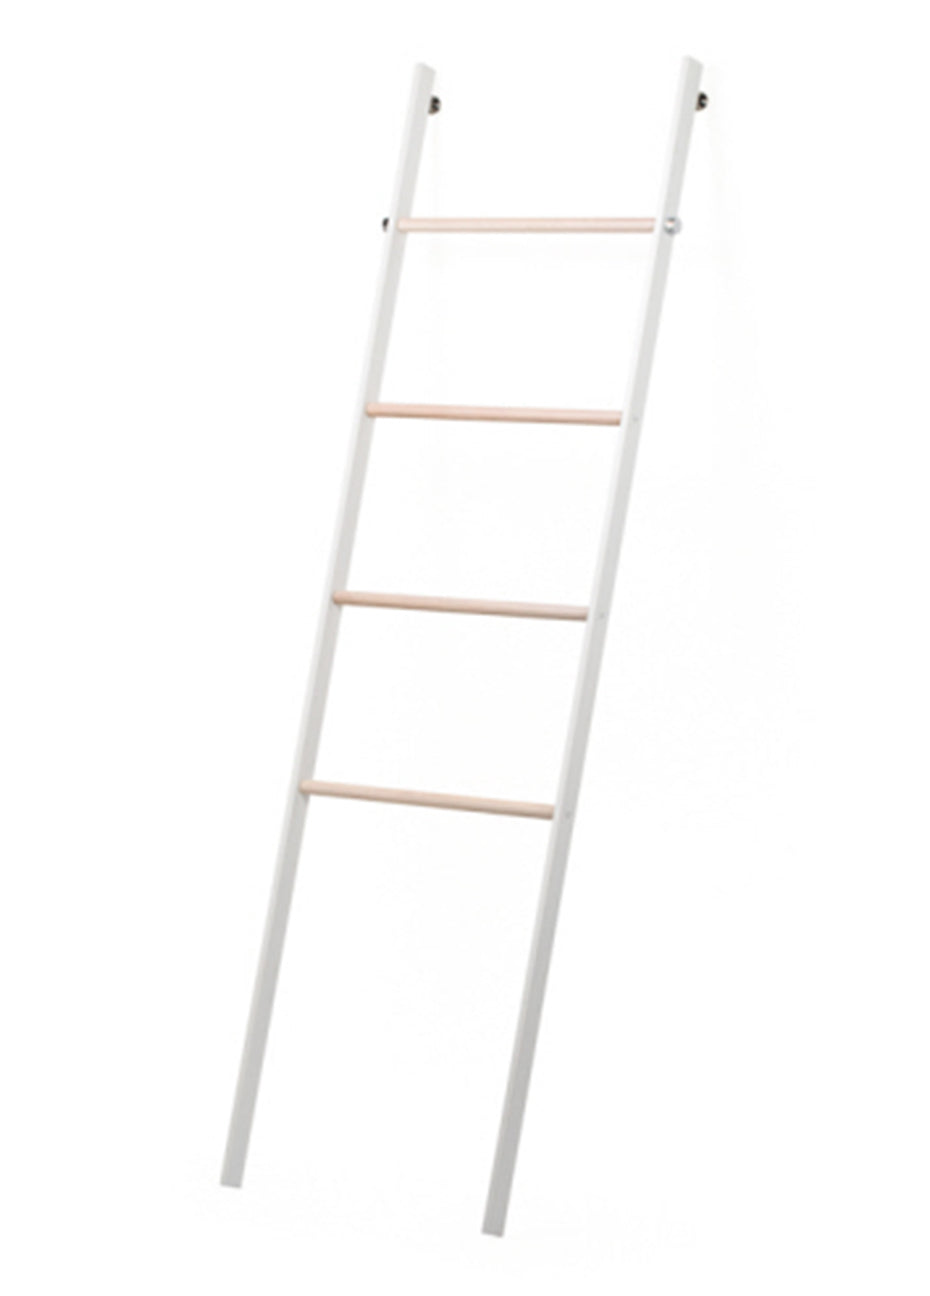 Towel Rack Ladder - White Pink Tartan